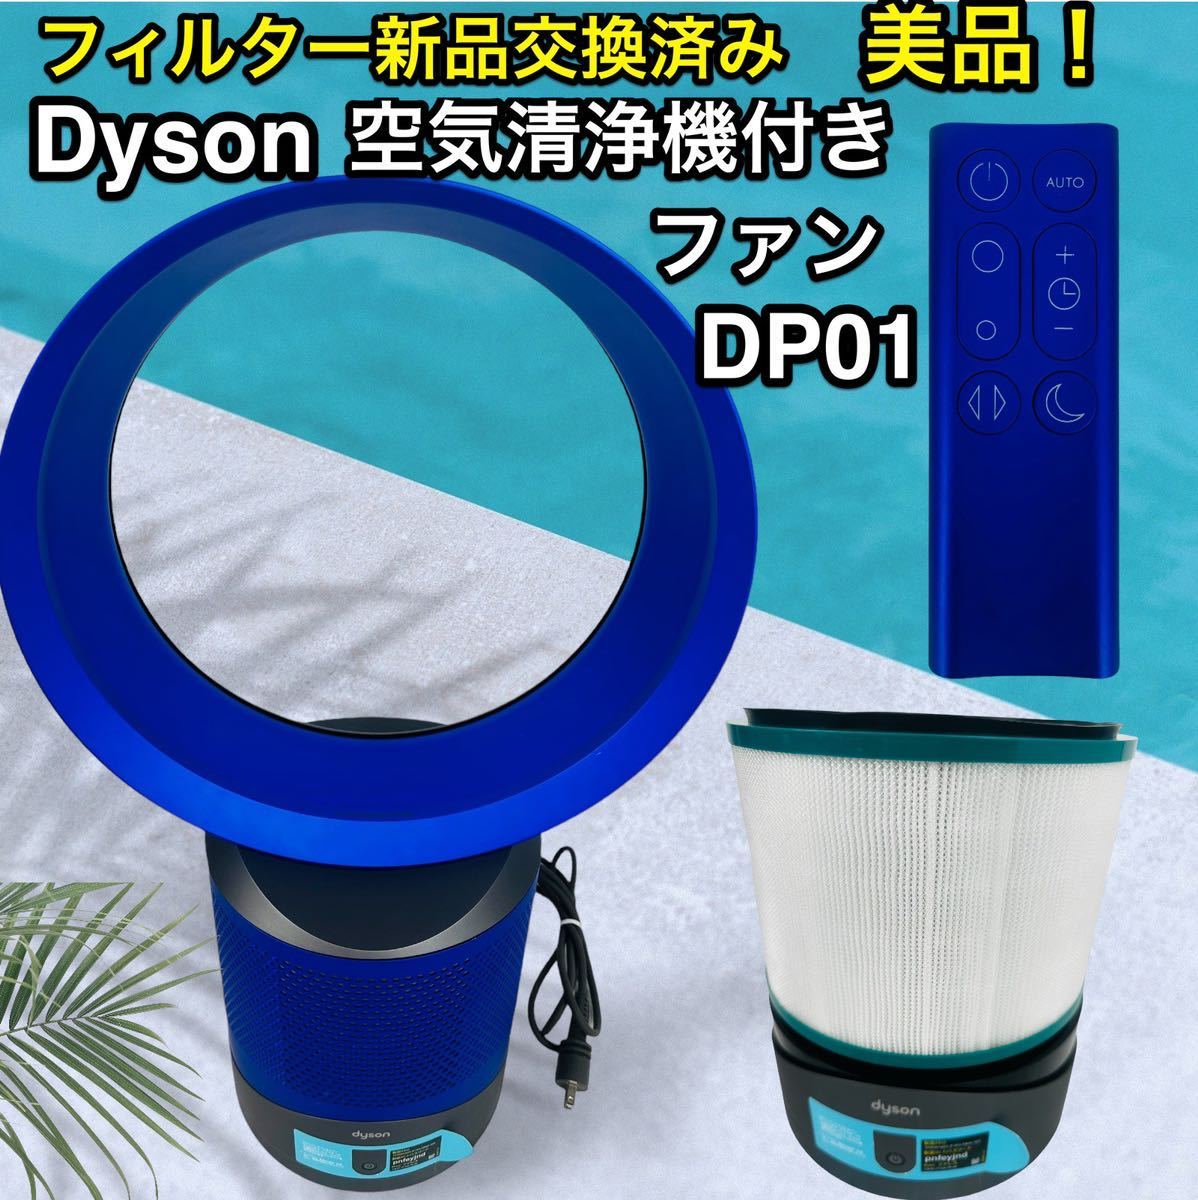 上品な ダイソン フィルター新品♪ 扇風機 DP01 link cool pure 扇風機